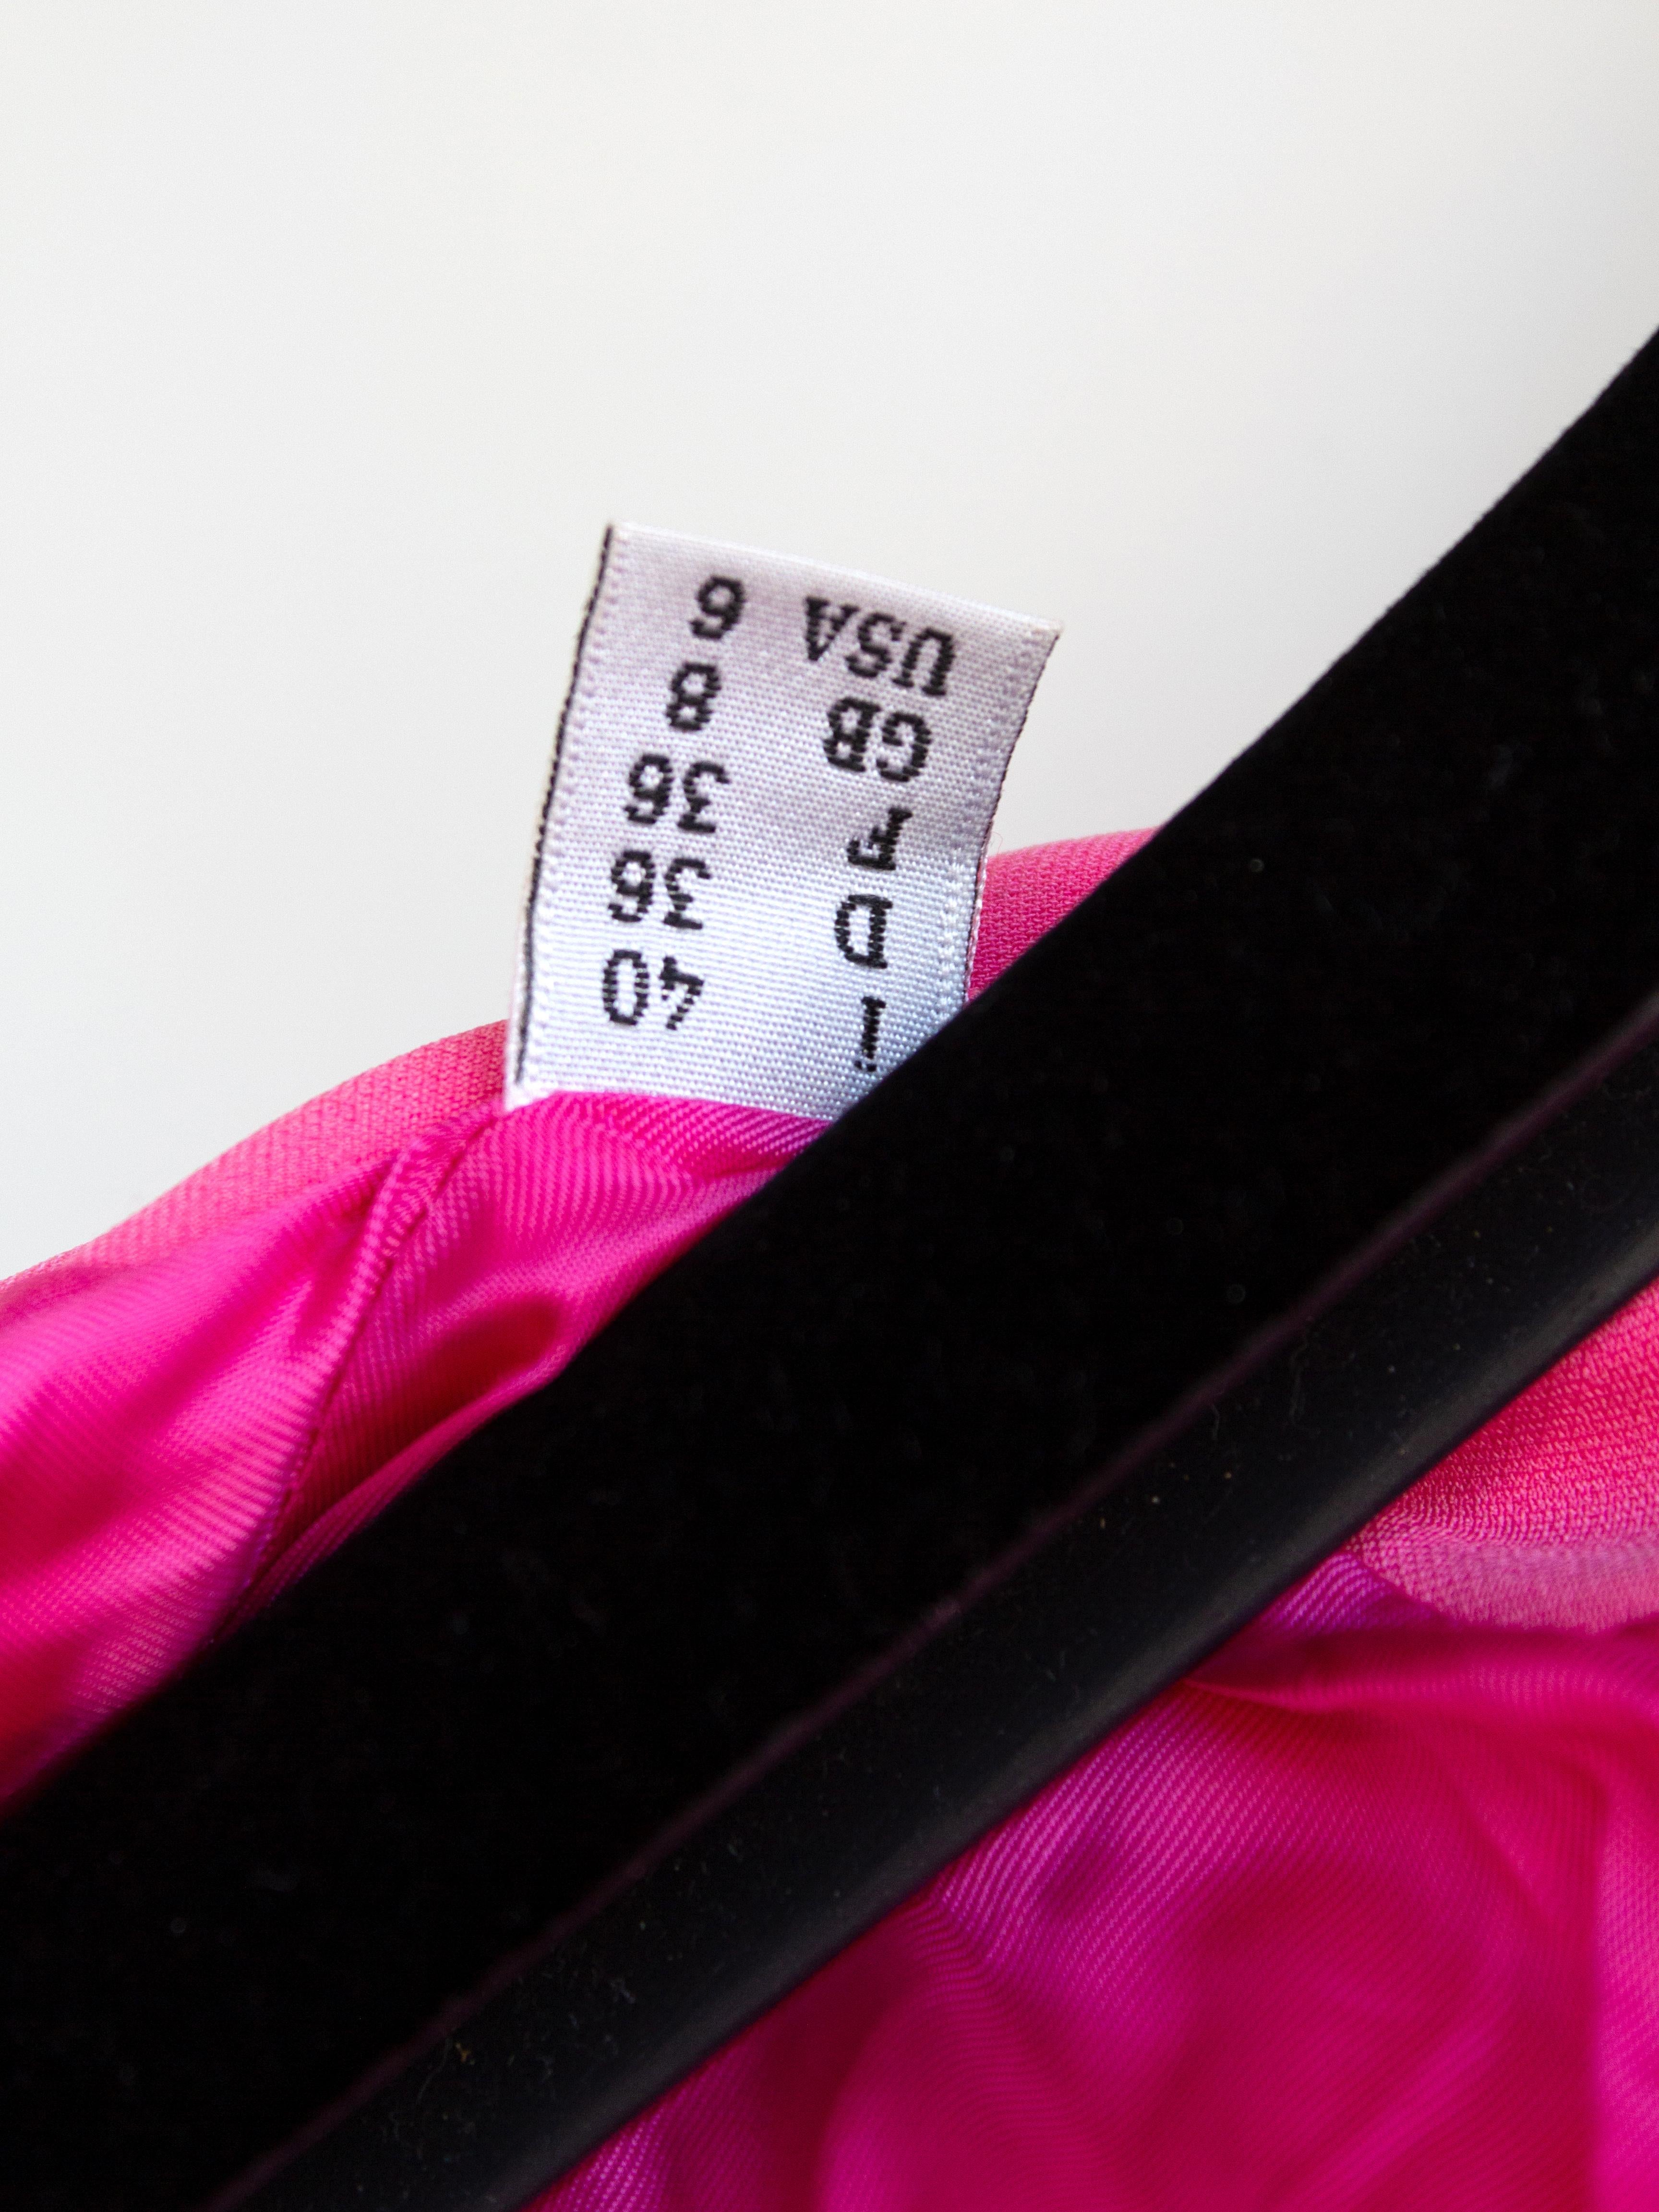 Moschino Couture S/S 2015 - Barbie - Veste rose ornée de strass et de cristaux en vente 13